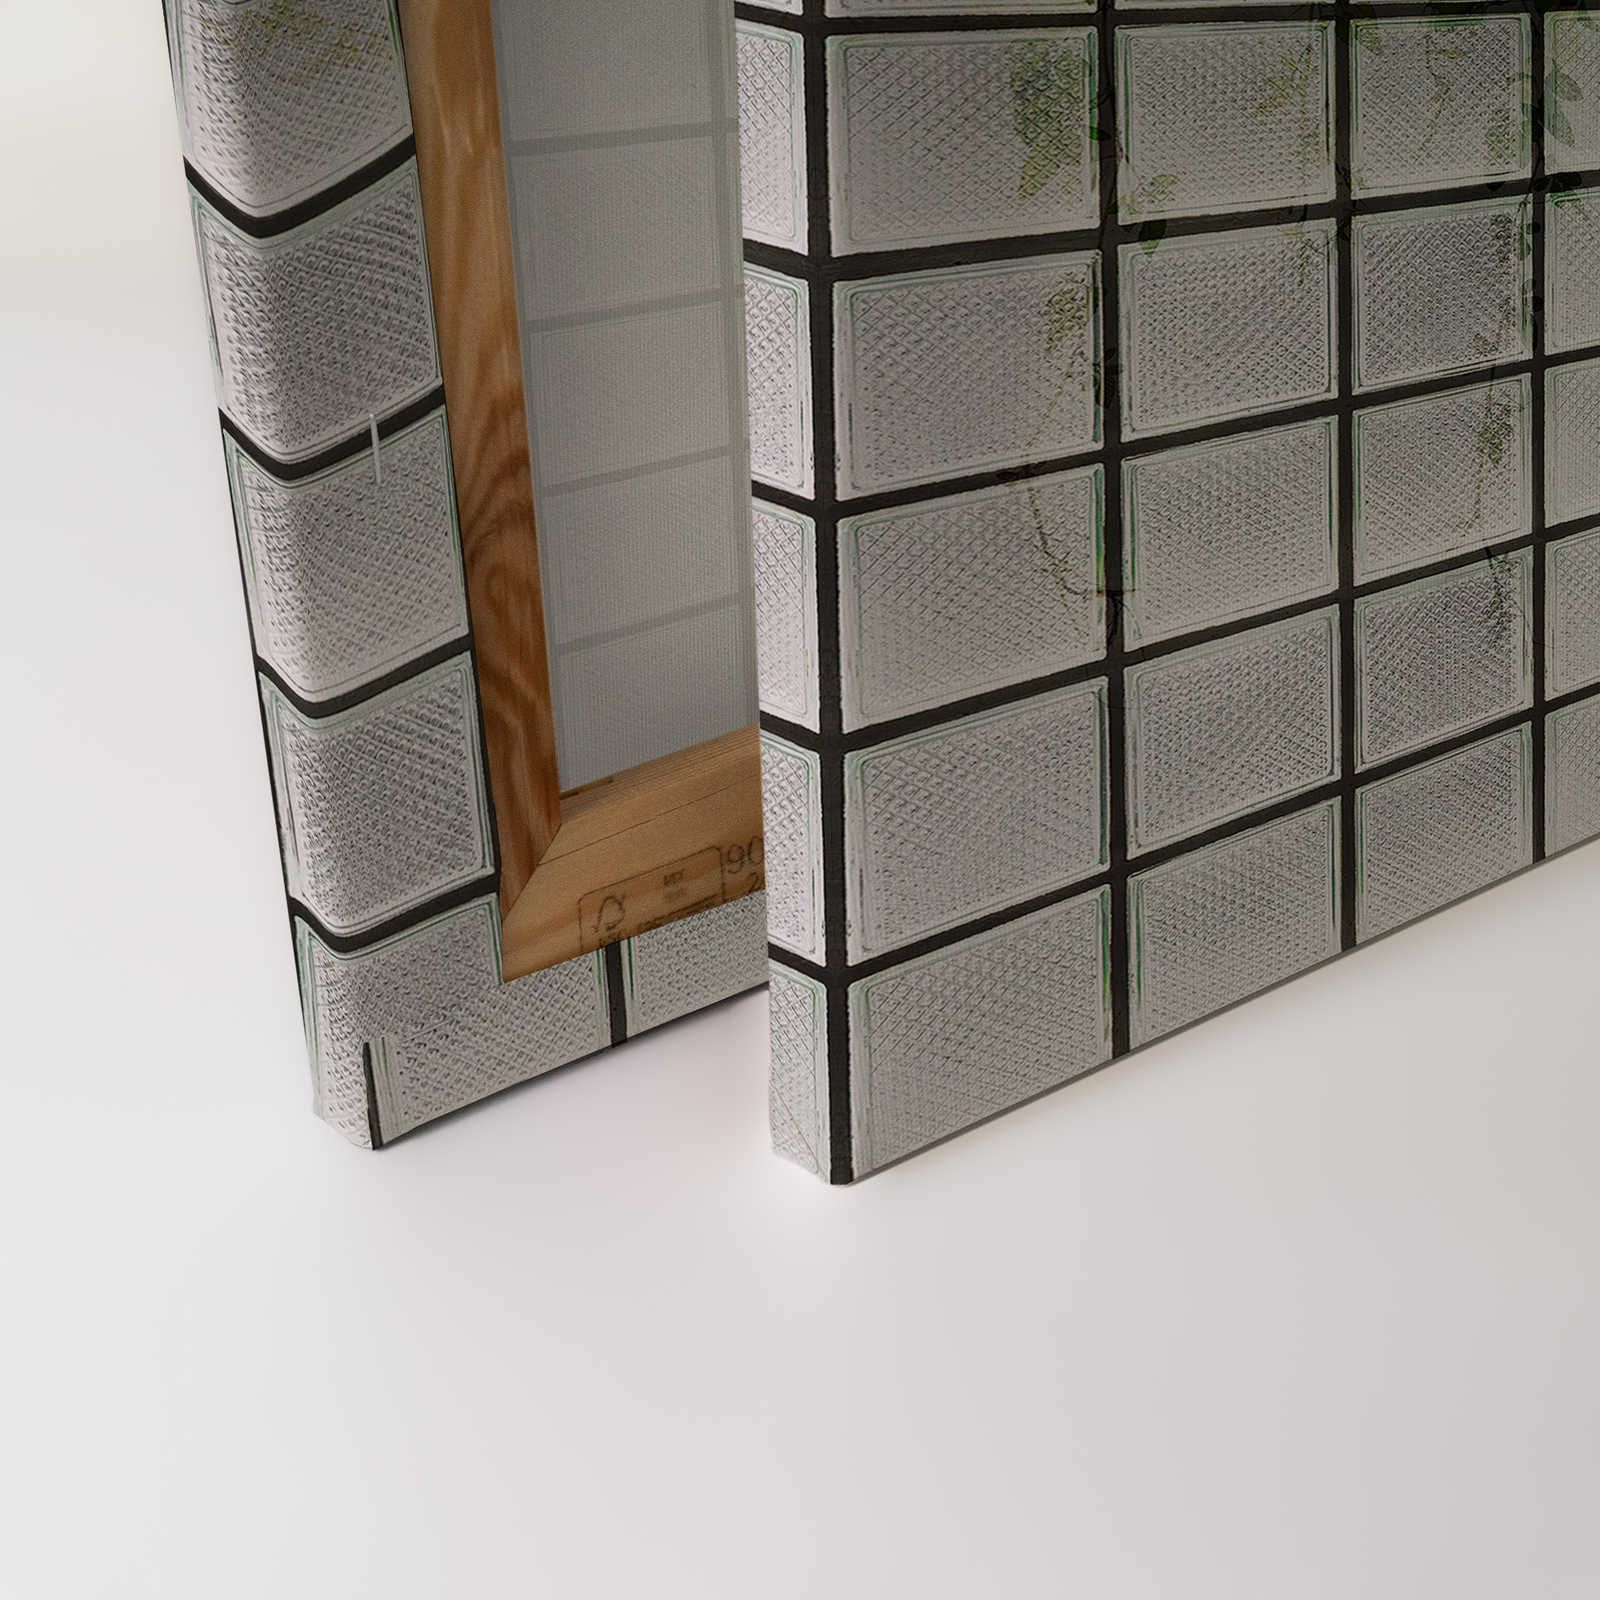             Green House 2 - Toile de serre Feuilles & briques de verre - 0,90 m x 0,60 m
        